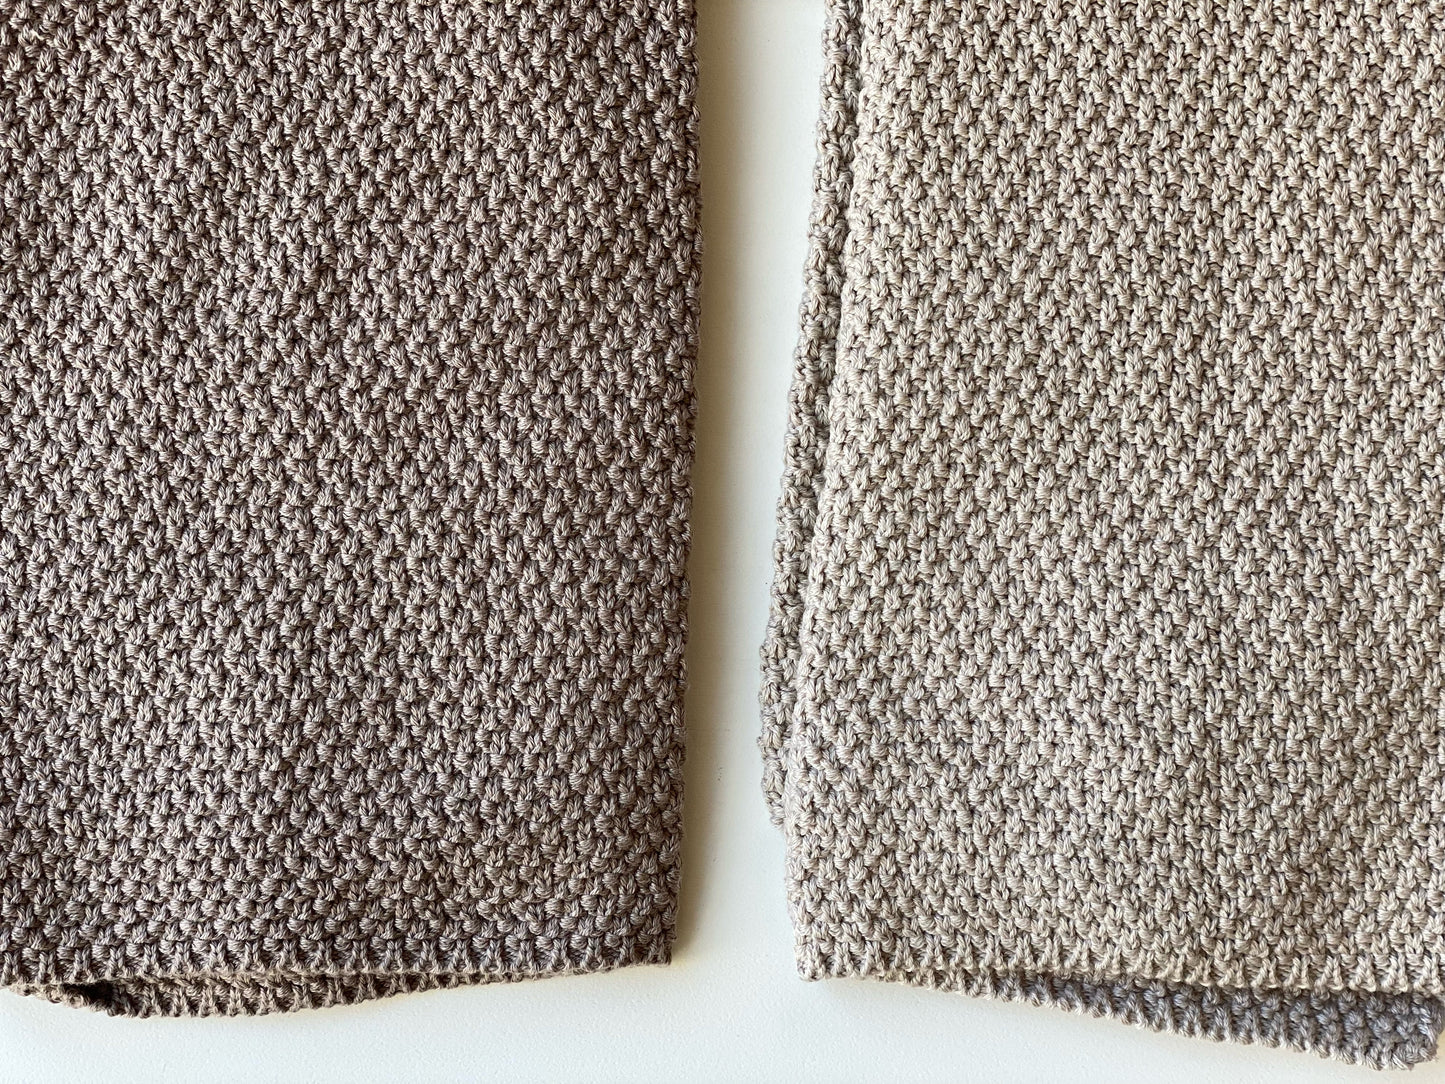 Cotton knit towel